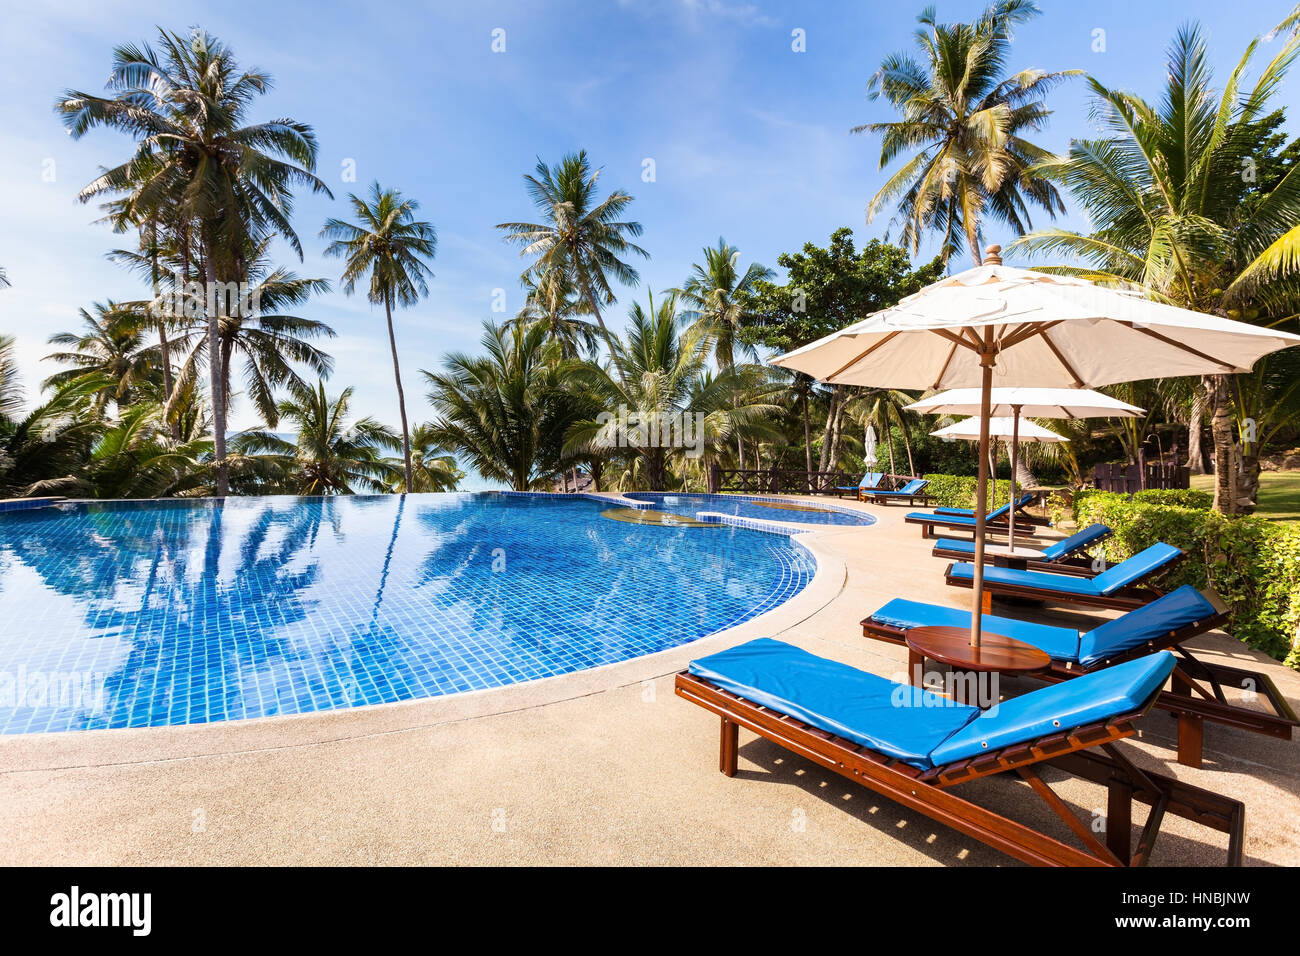 Wunderschönen tropischen Strand Hotelresort mit Schwimmbad, Liegestühle und Palmen Bäume an einem warmen sonnigen Tag, Paradies Reiseziel für Urlaub Stockfoto